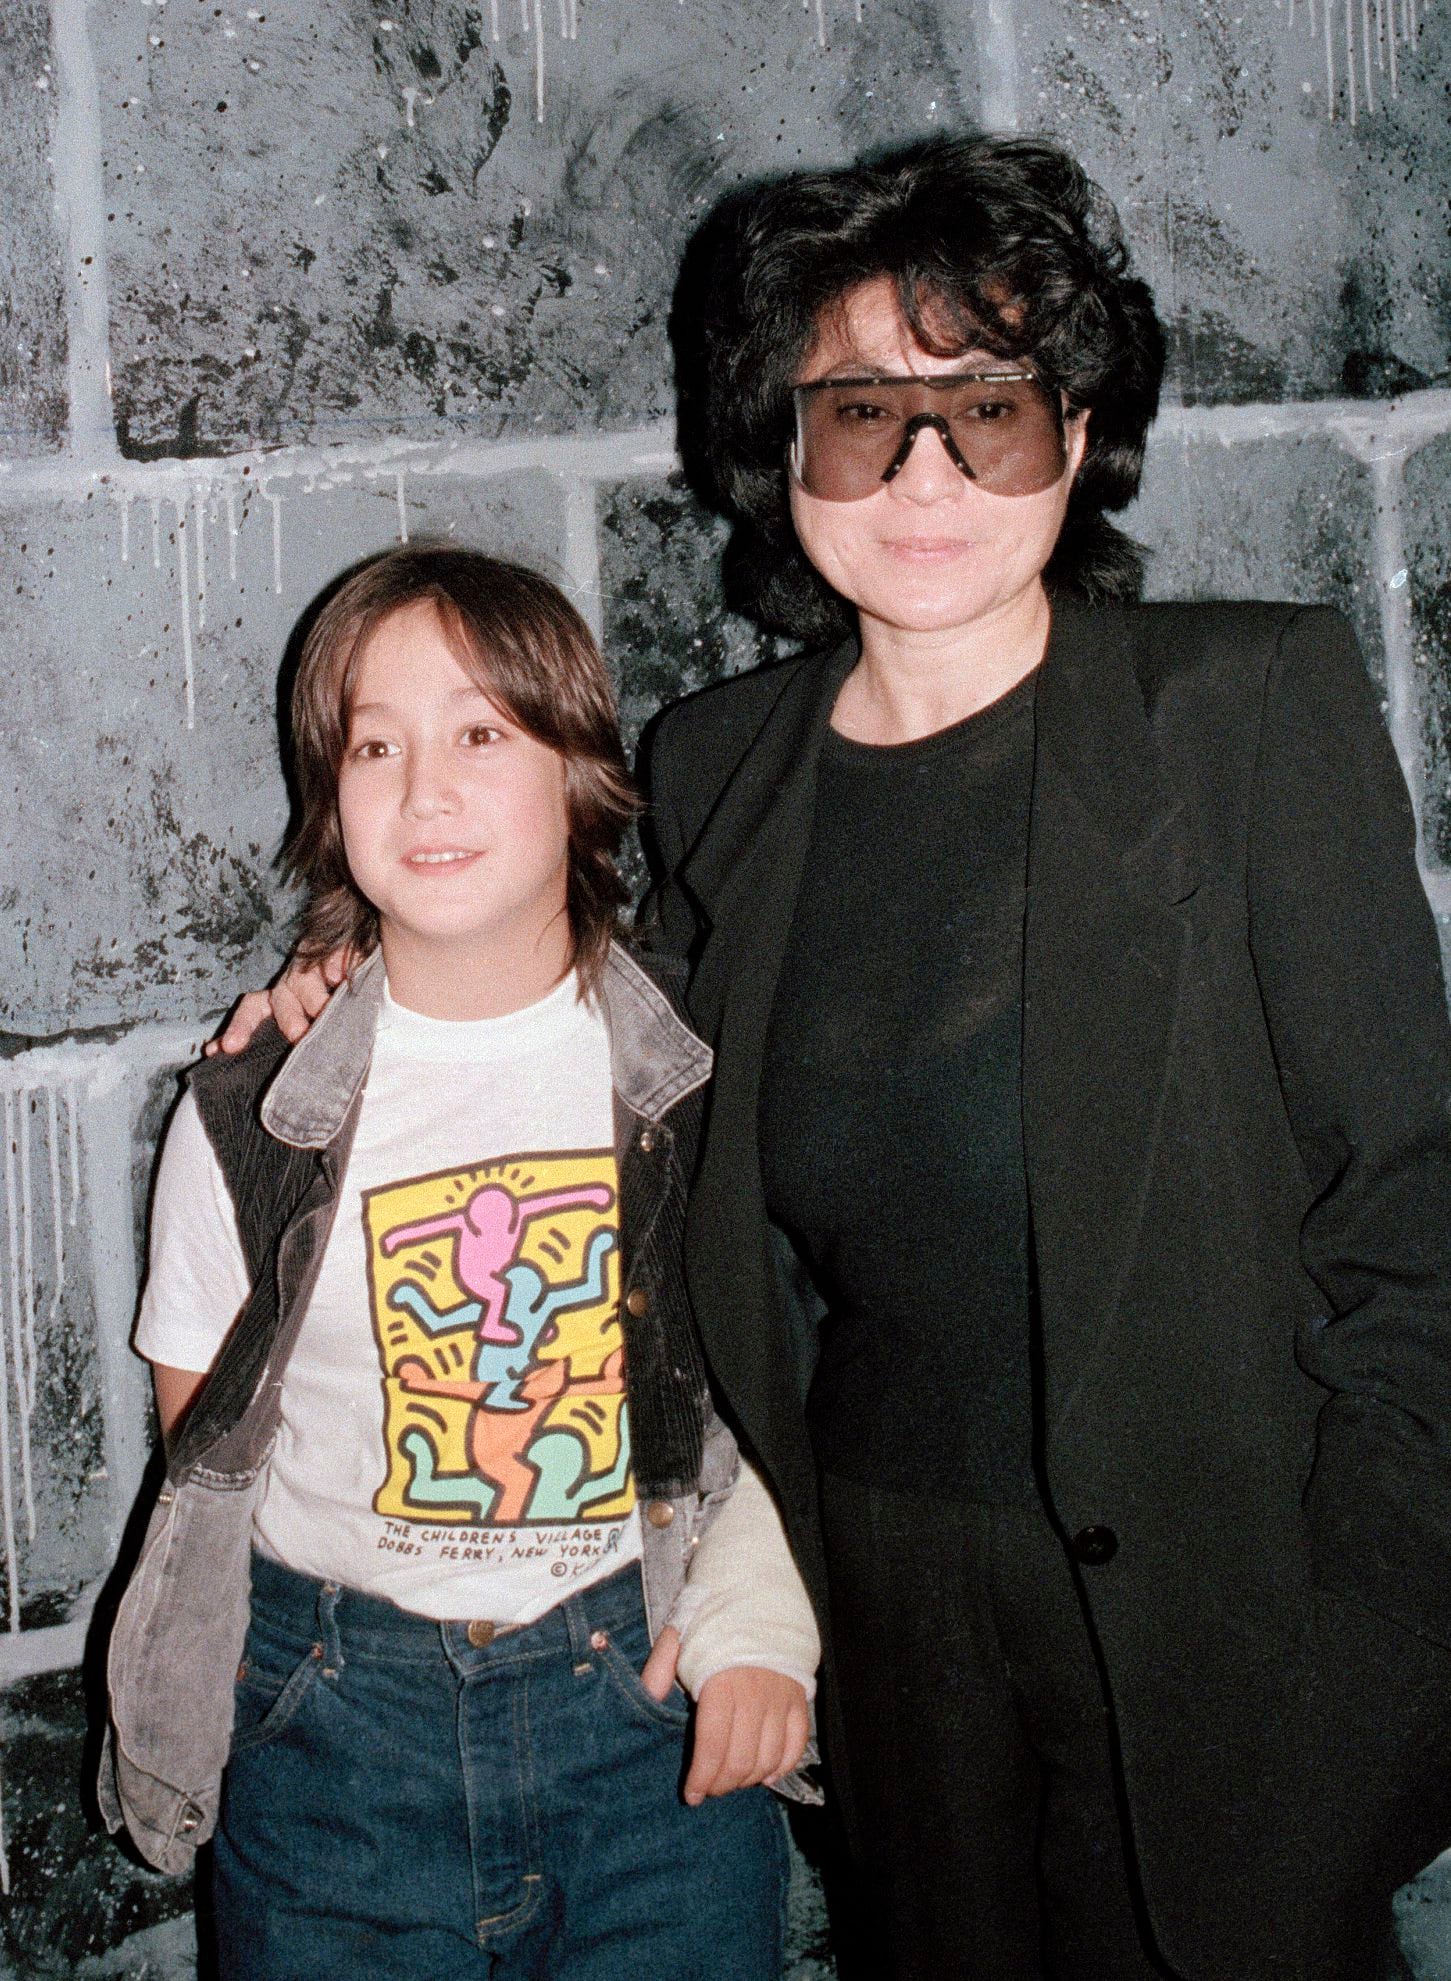 ARCHIVO -  Sean Lennon, izquierda, y su madre Yoko Ono, viuda de John Lennon en Nueva York el 7 de octubre de 1985. El álbum "Gimme Some Truth" con 36 canciones de Lennon fue lanzado el 9 de octubre de 2020 para celebrar el cumpleaños 80 del músico. (Foto AP/David Bookstaver, archivo)